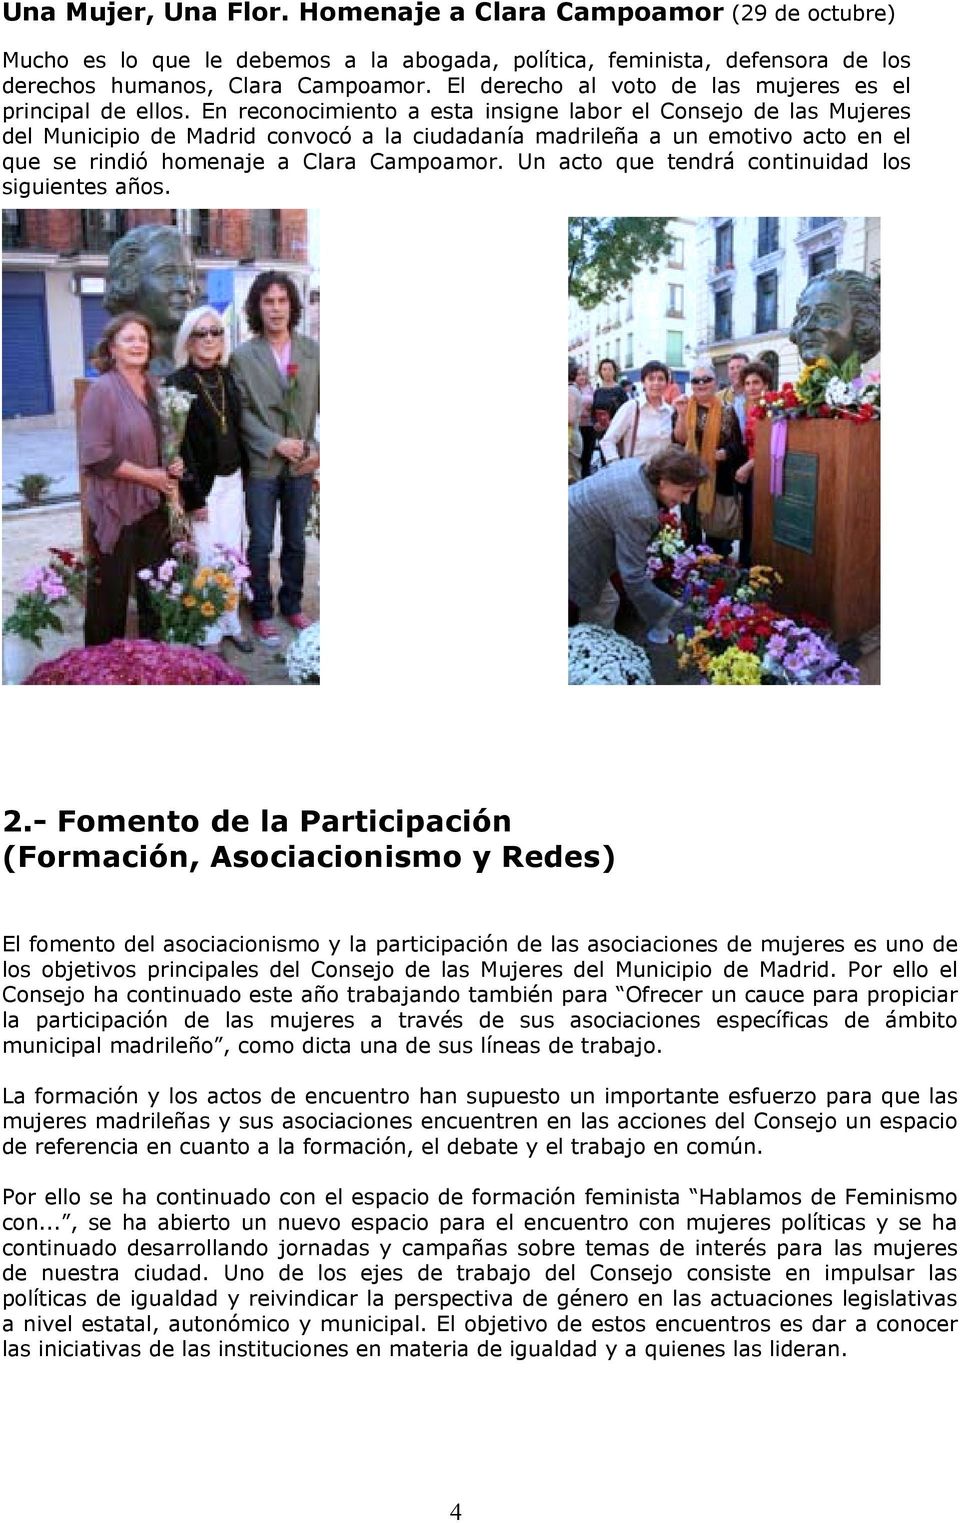 En reconocimiento a esta insigne labor el Consejo de las Mujeres del Municipio de Madrid convocó a la ciudadanía madrileña a un emotivo acto en el que se rindió homenaje a Clara Campoamor.